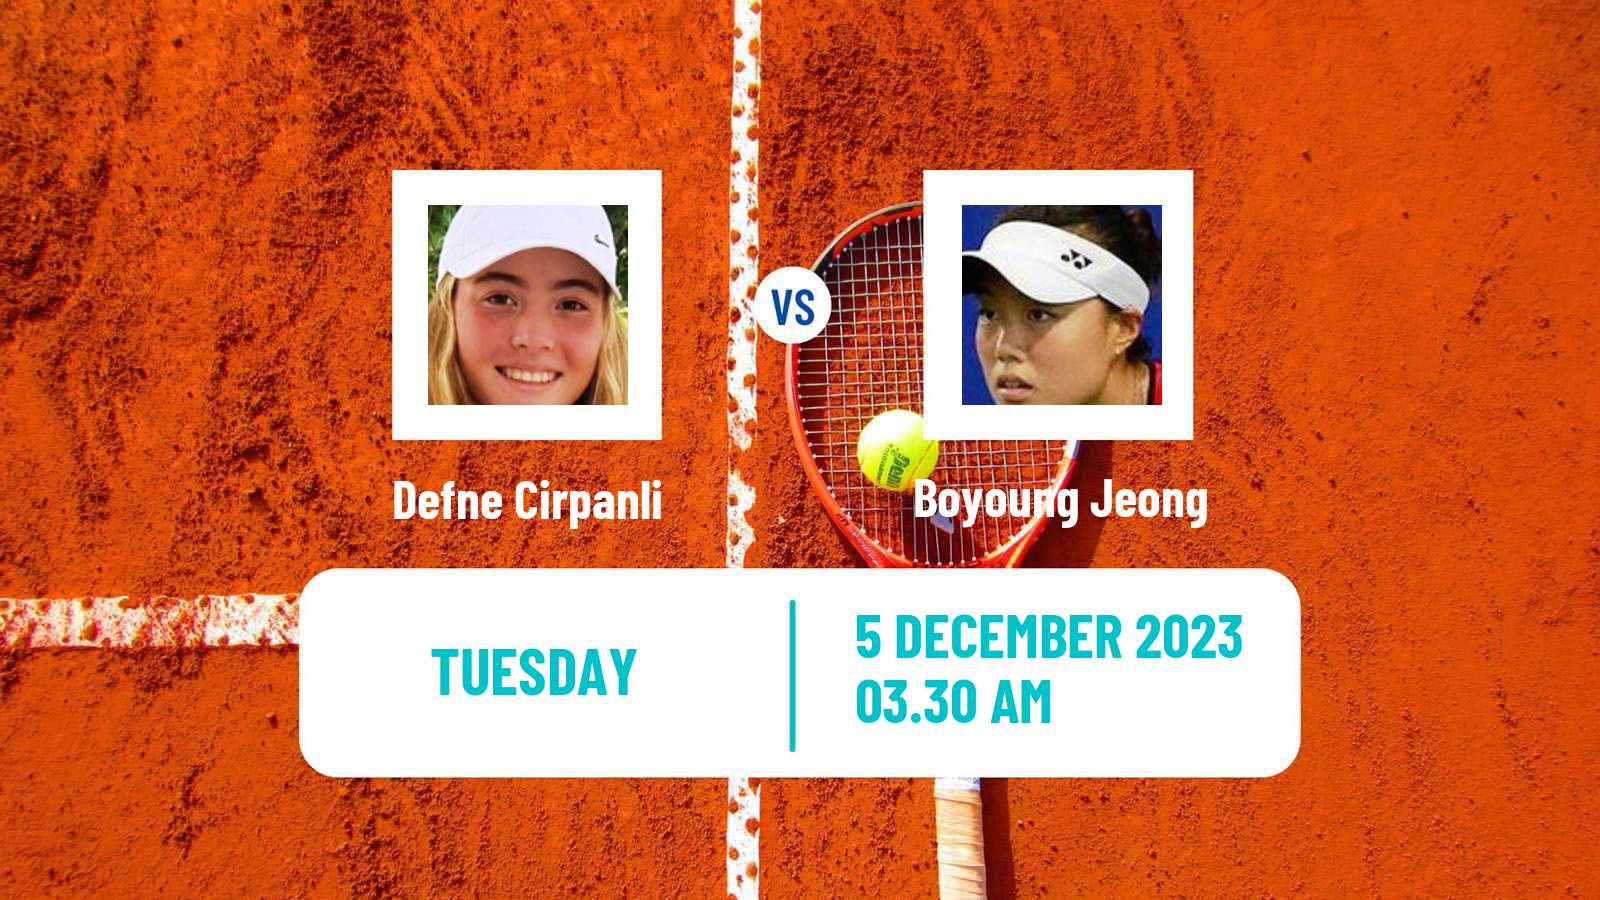 Tennis ITF W15 Antalya 21 Women Defne Cirpanli - Boyoung Jeong